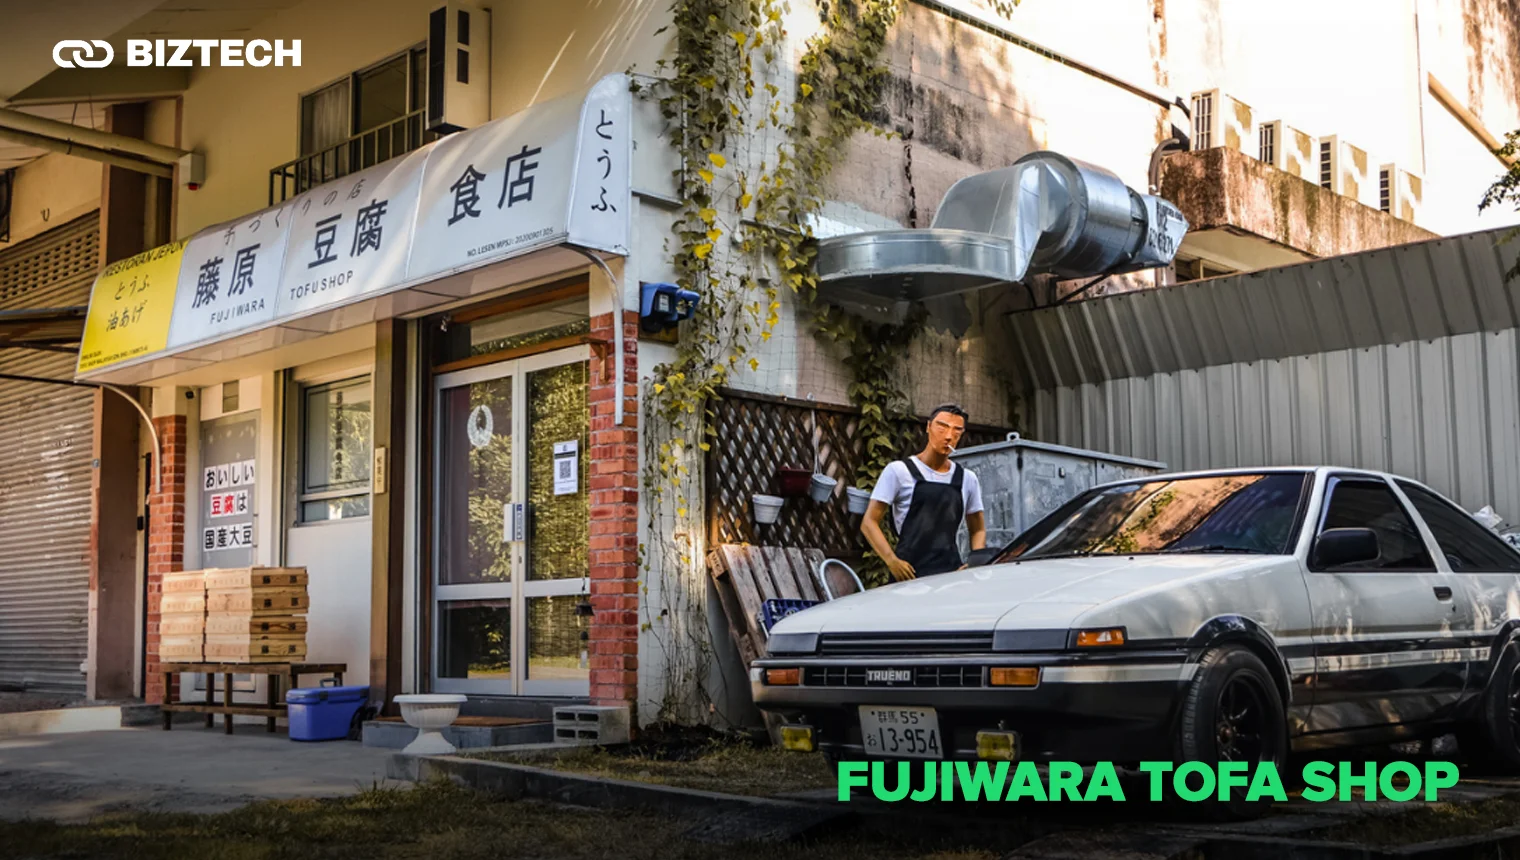 Fujiwara Tofa Shop